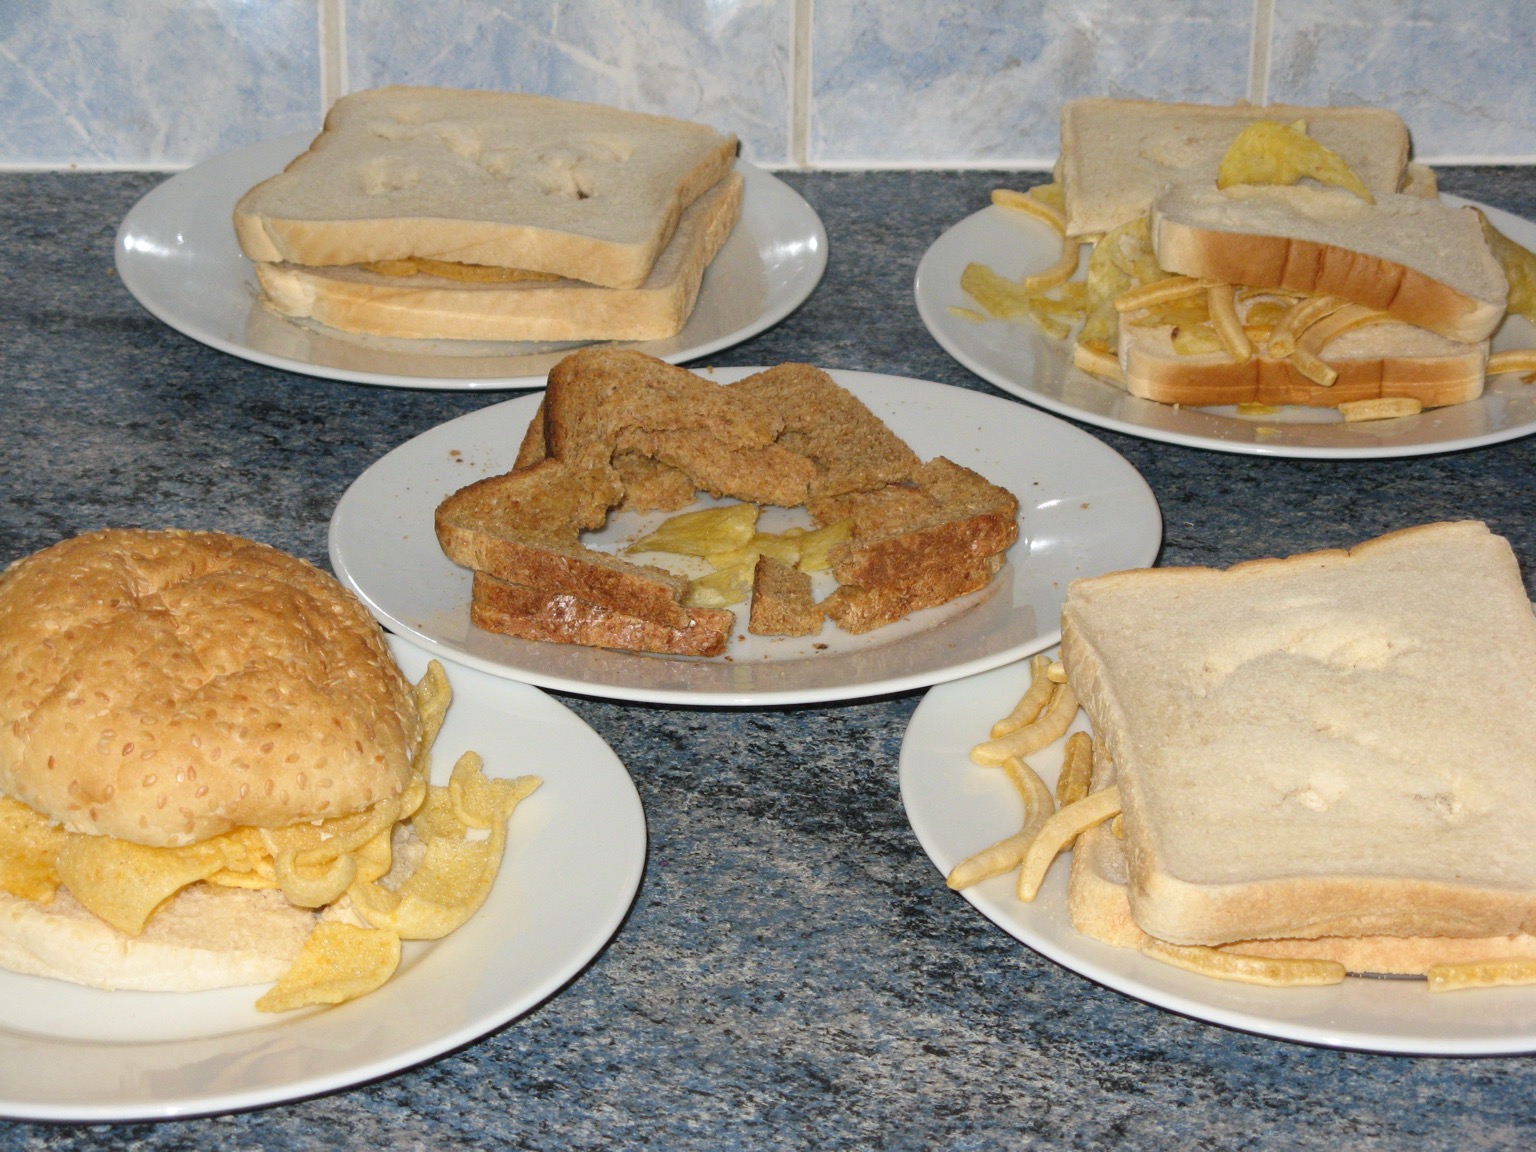 Five varied crisp sandwiches